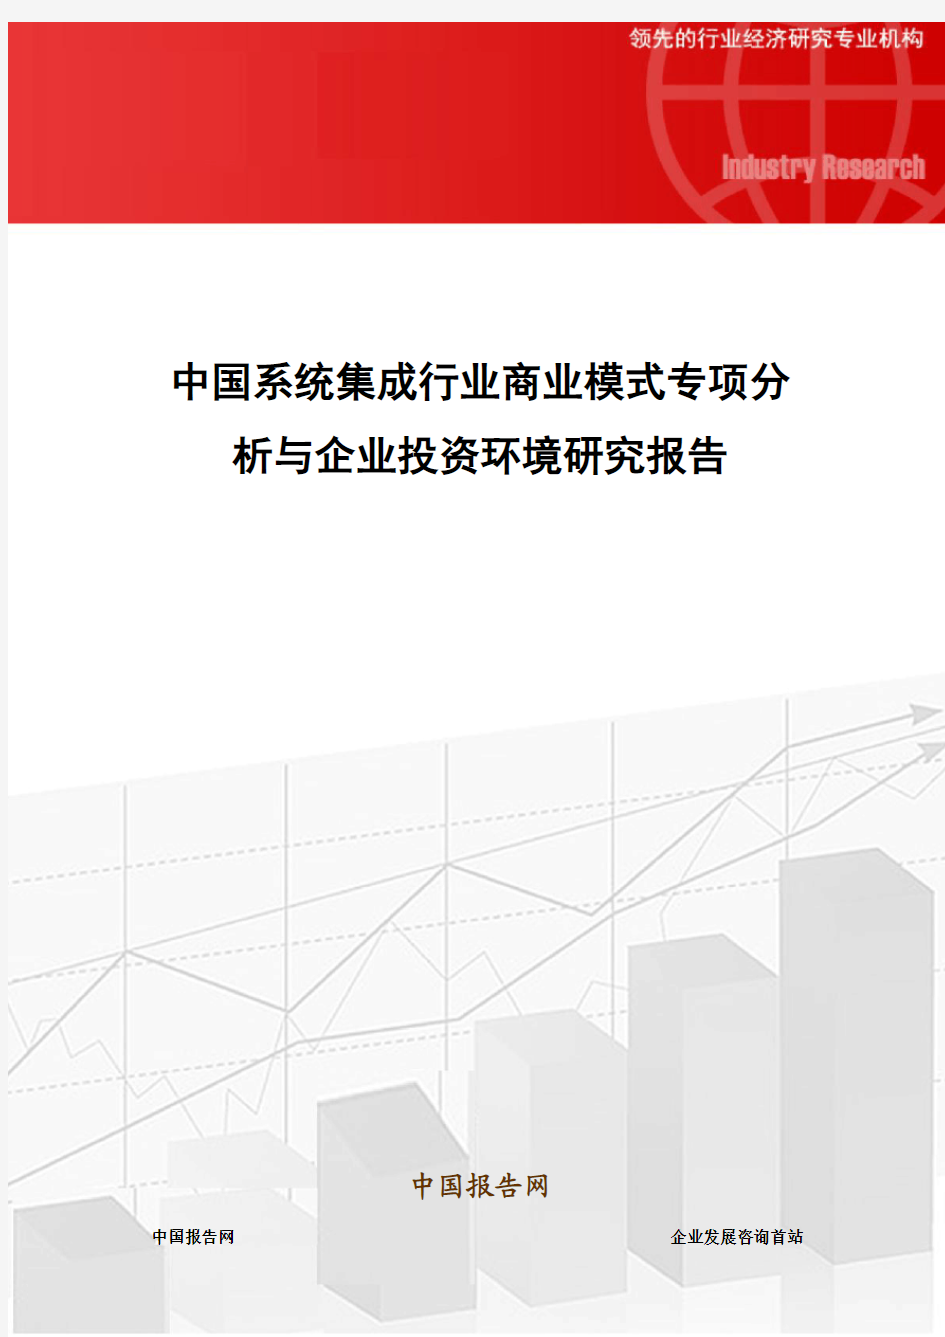 中国系统集成行业商业模式专项分析与企业投资环境研究报告